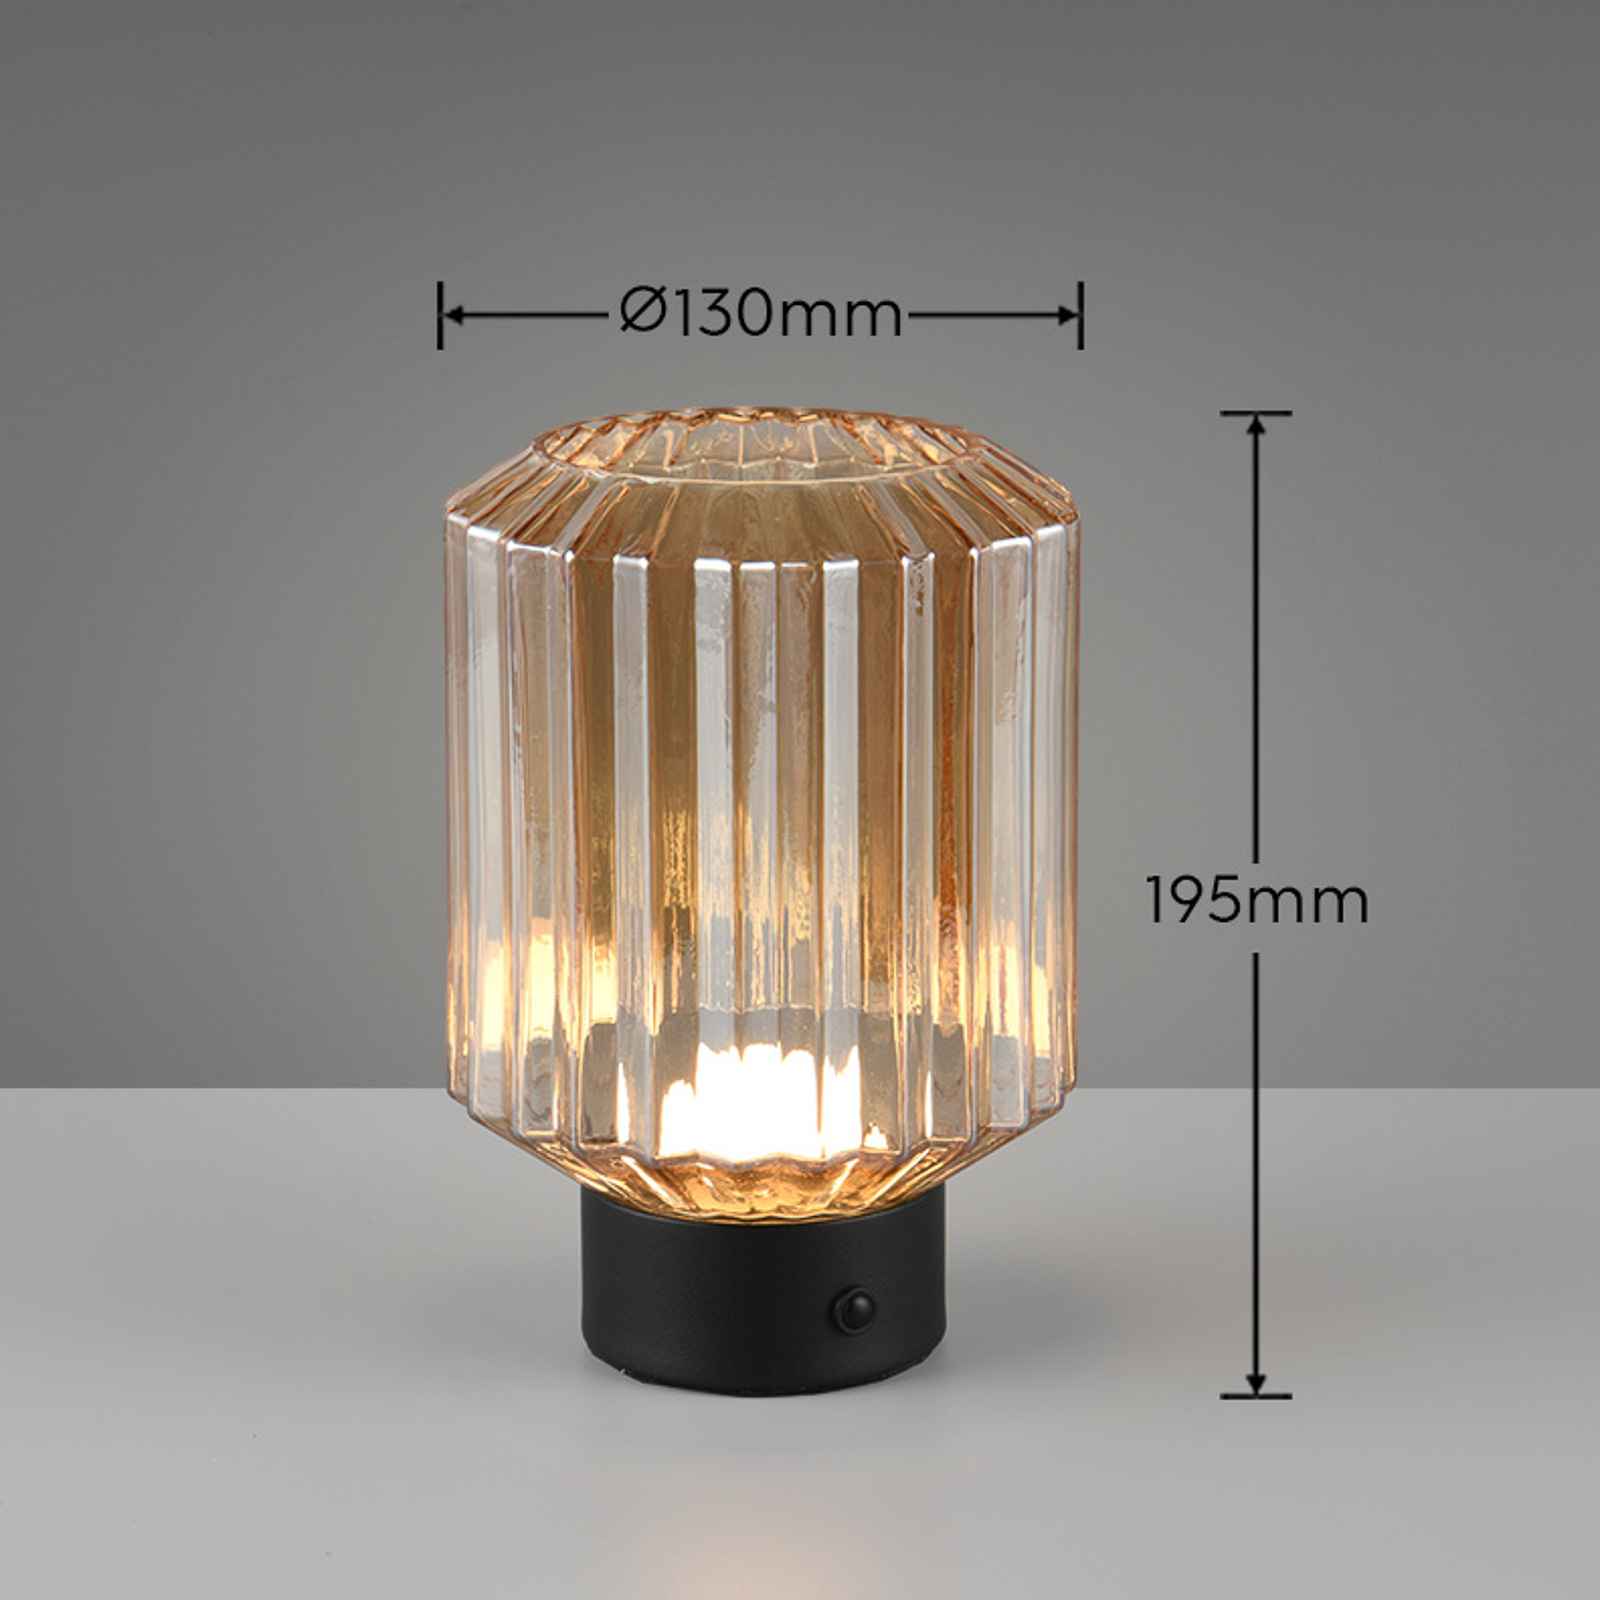 Lord LED oppladbar bordlampe, svart/amber, høyde 19,5 cm, glass